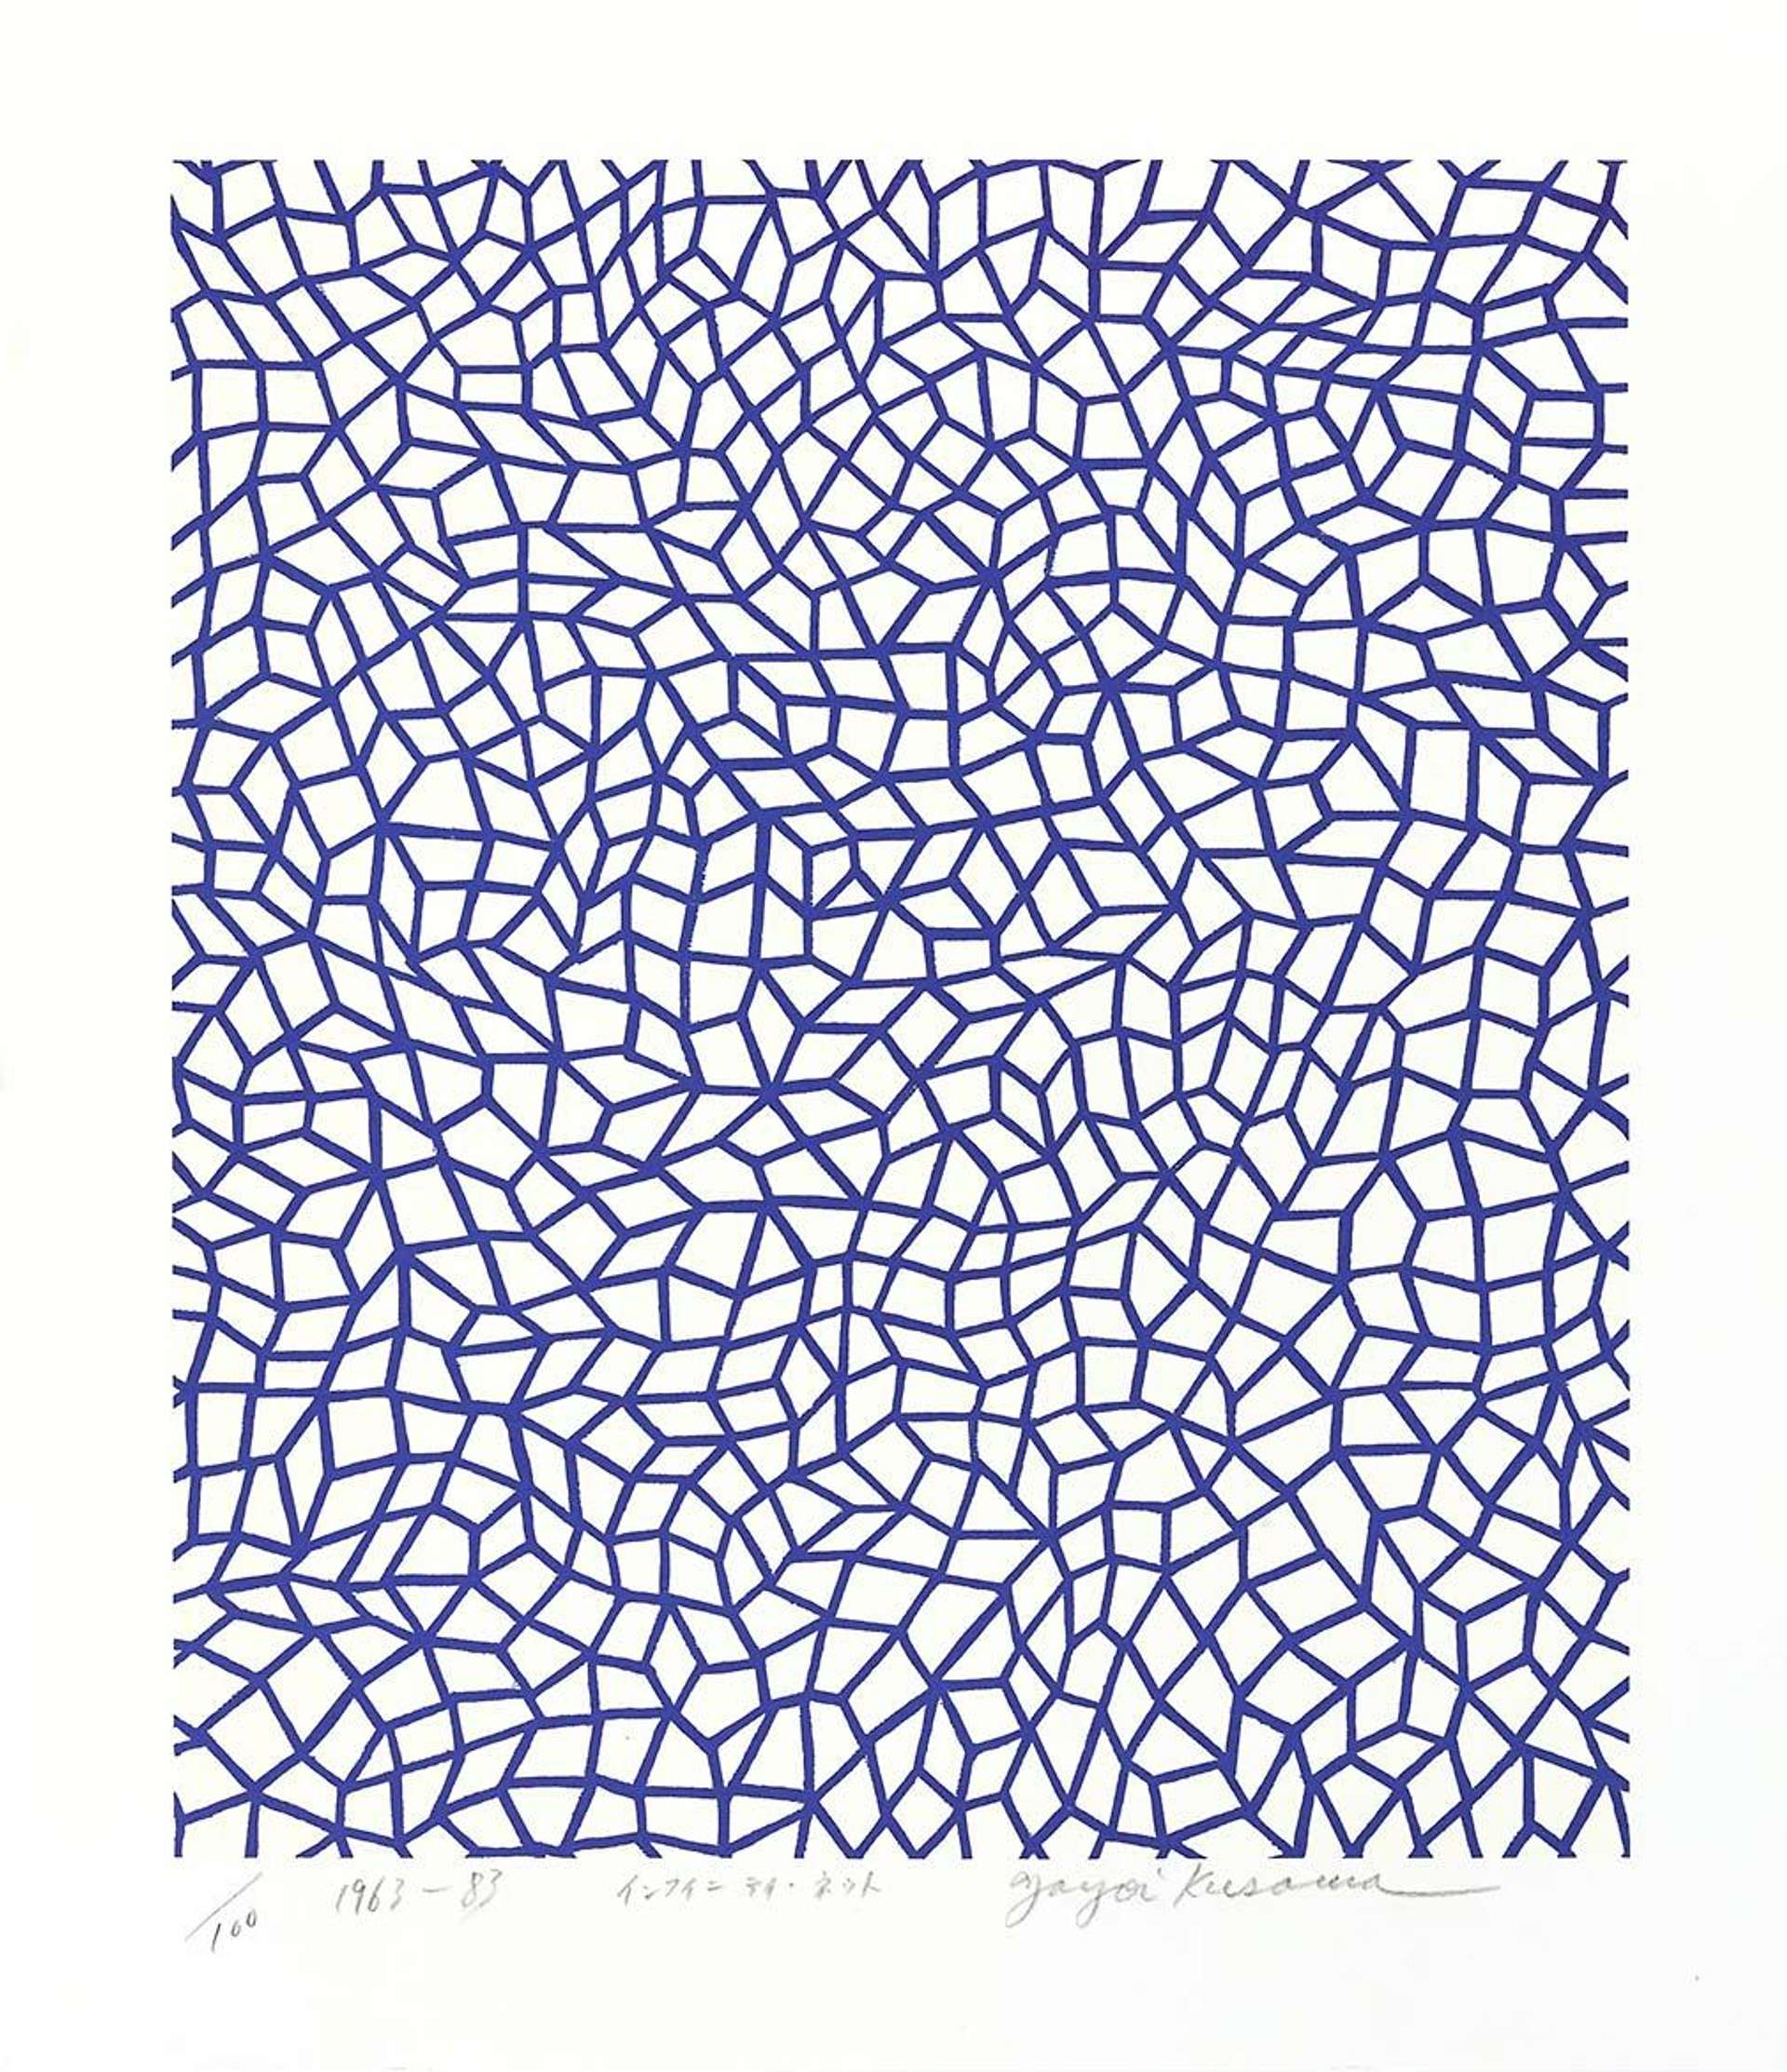 Yayomi Kusama's Infinity Nets, Kusama 26. A screenprint of a blue, geometric pattern over a white background.